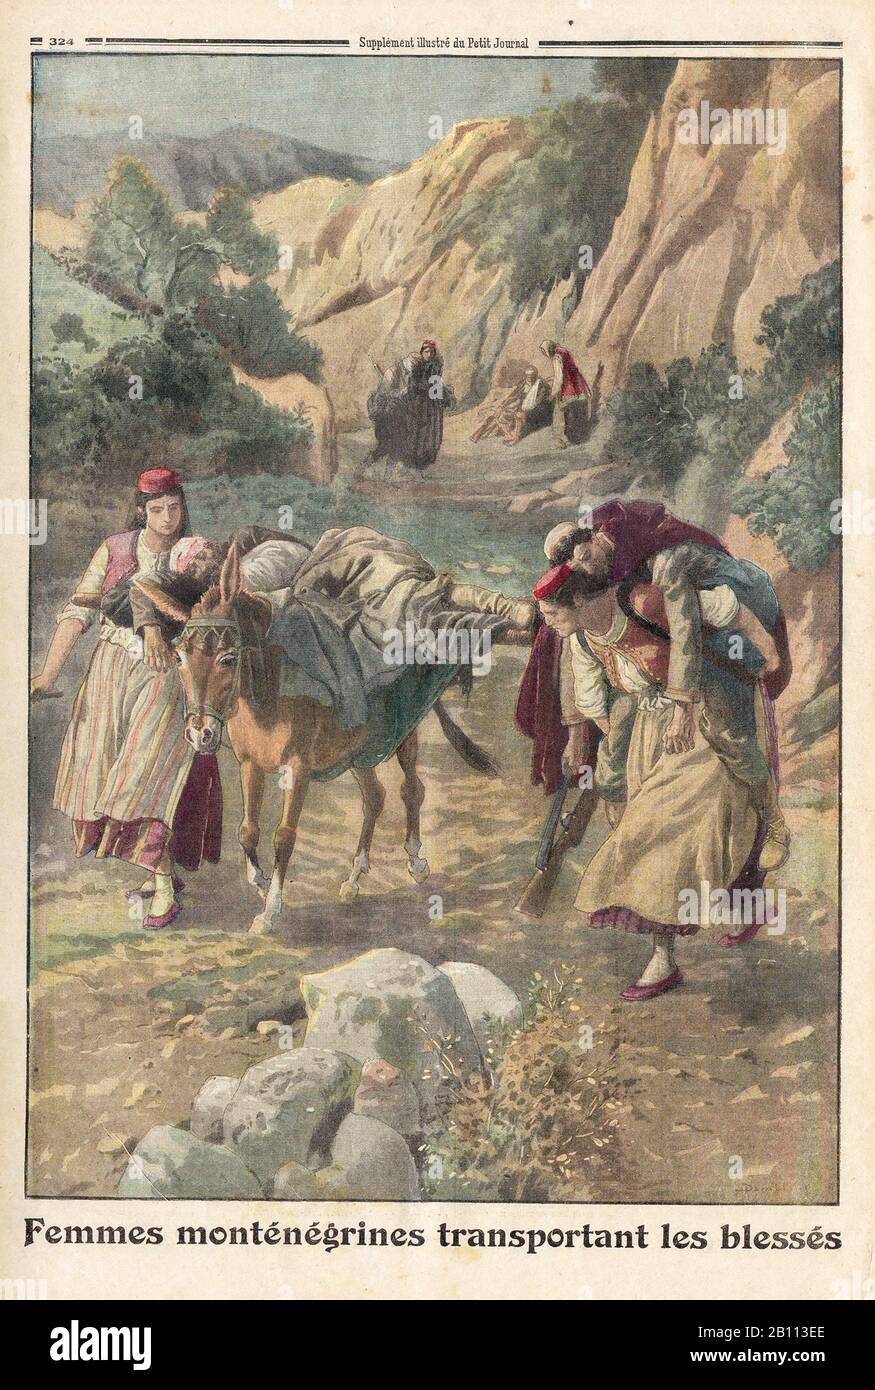 Femmes monténégrines transportant les blessés - mujeres montenegrinas portadoras de heridos - En el periódico francés 'le Petit Journal' - Foto de stock